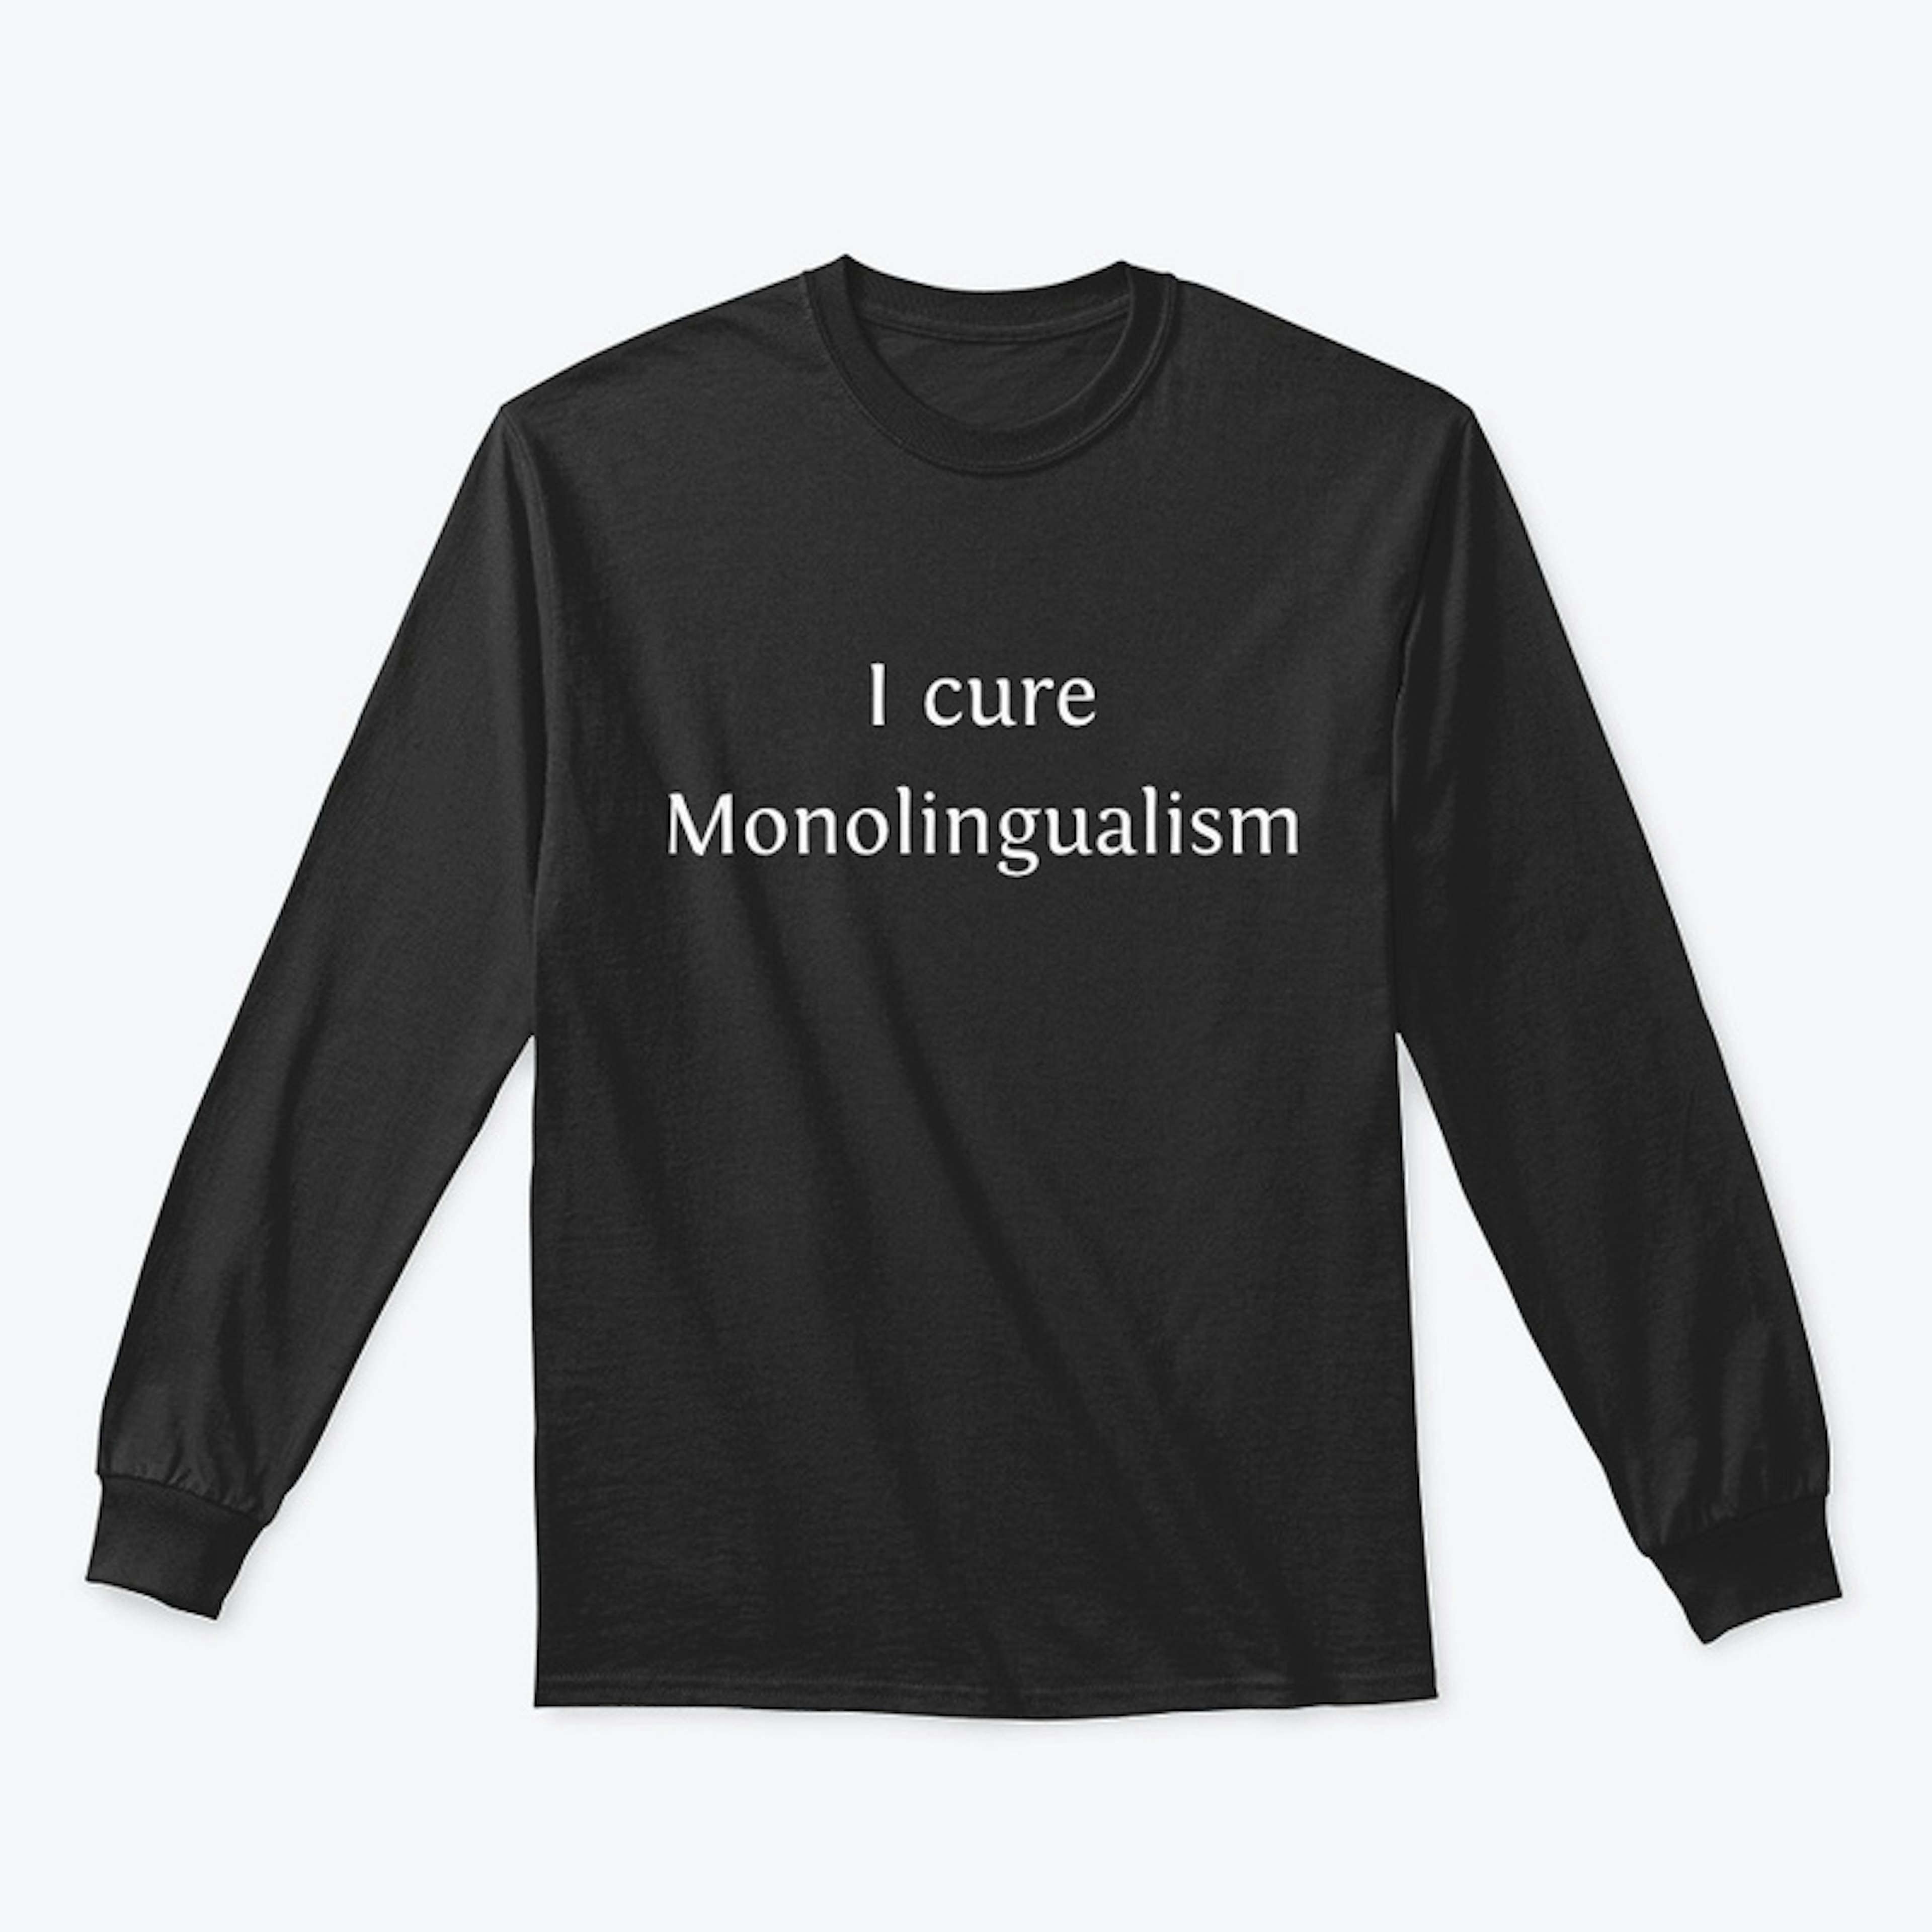 I cure monolingualism